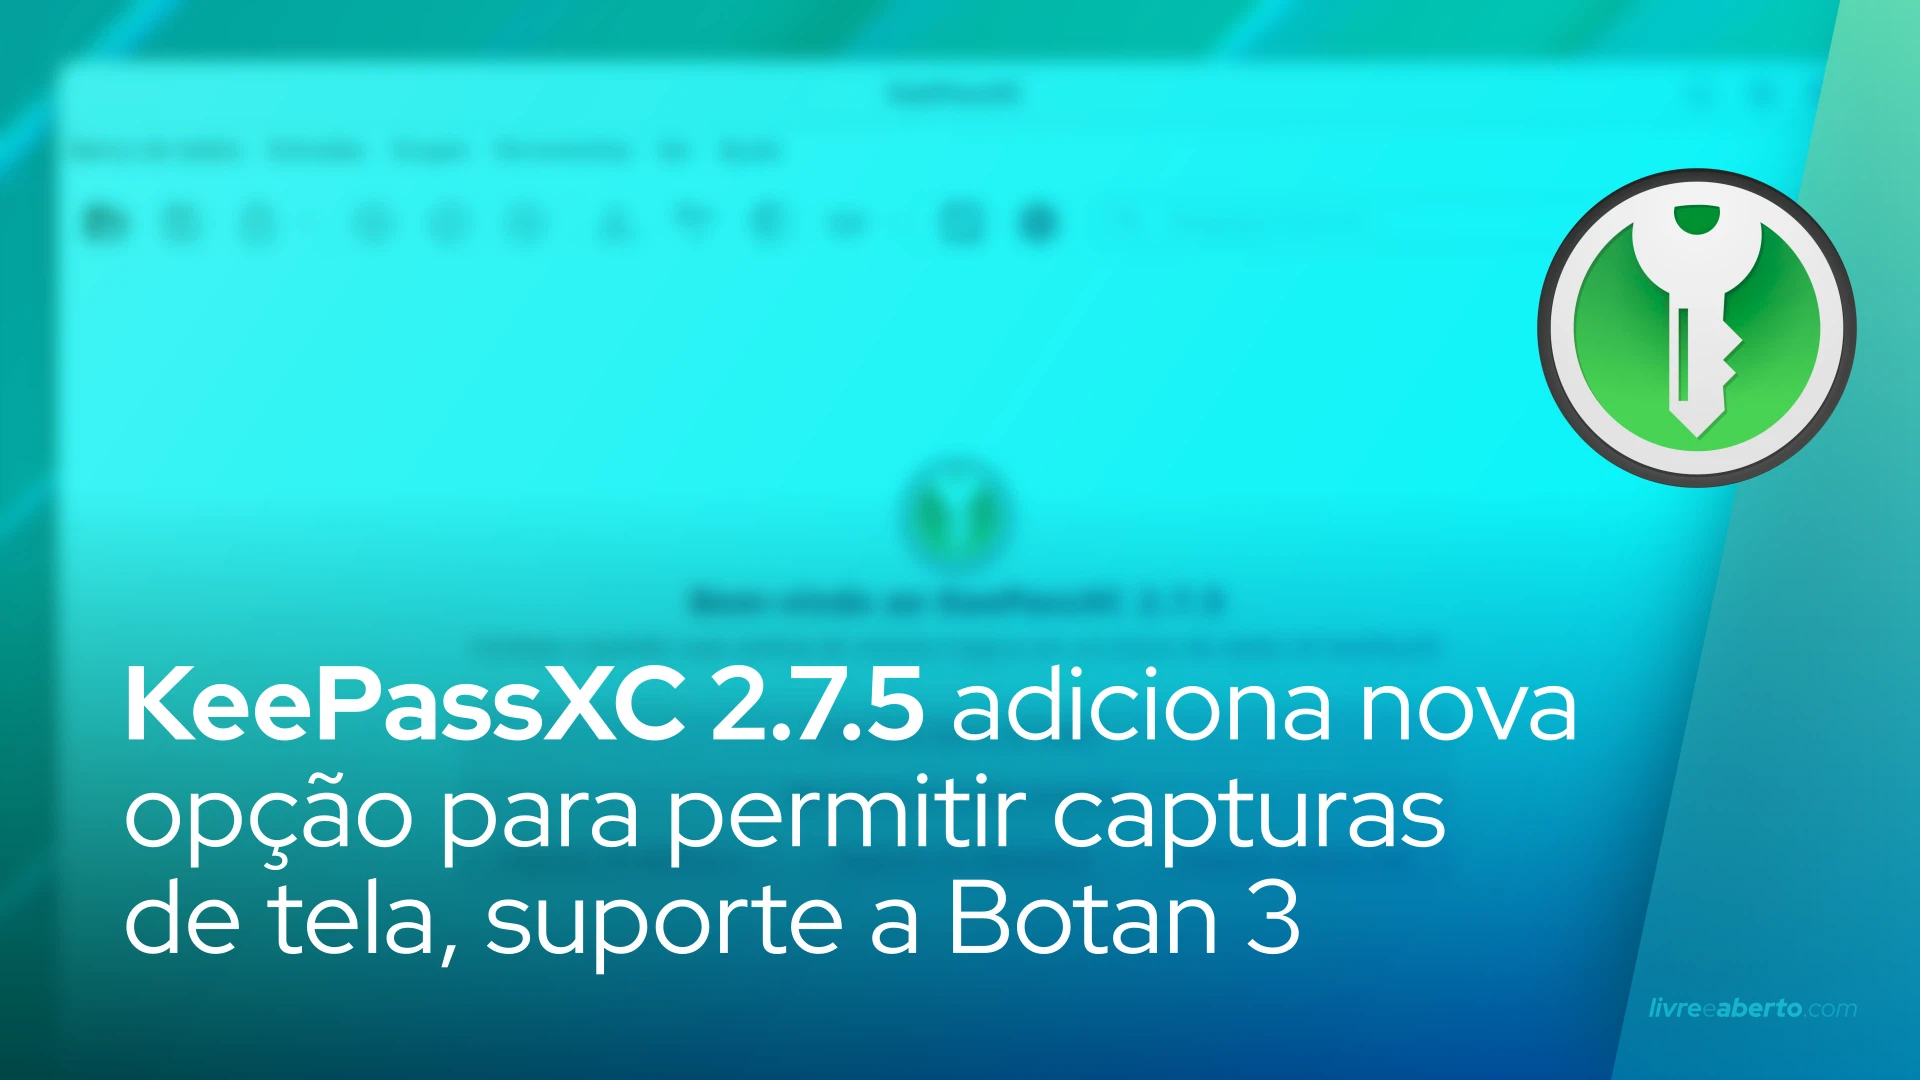 KeePassXC 2.7.5 adiciona nova opção para permitir capturas de tela, suporte a Botan 3